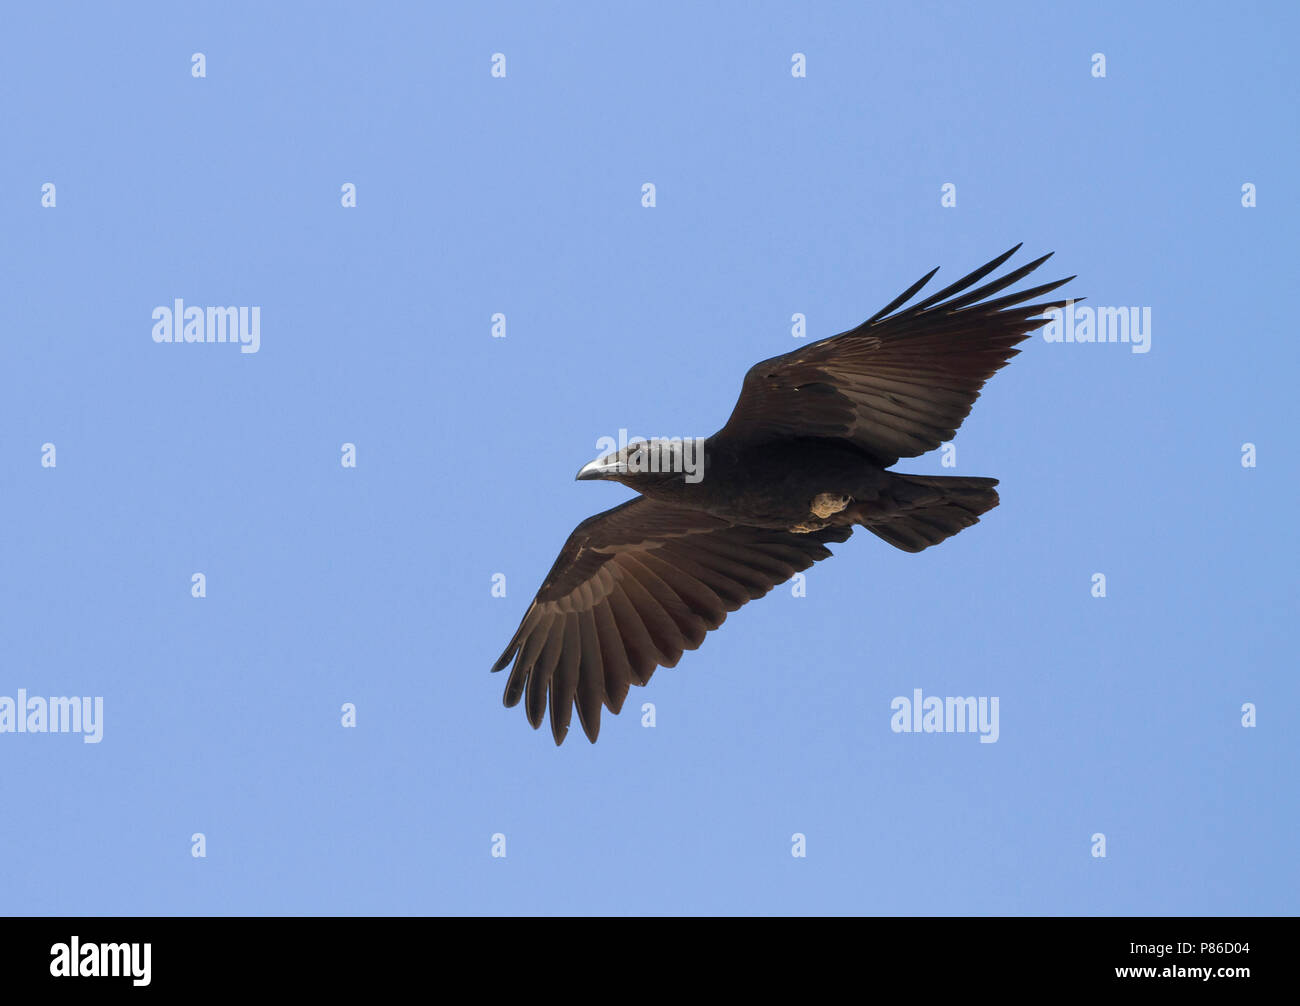 Fan-tailed Raven - Borstenrabe - Corvus rhipidurus, Oman Stock Photo - Alamy